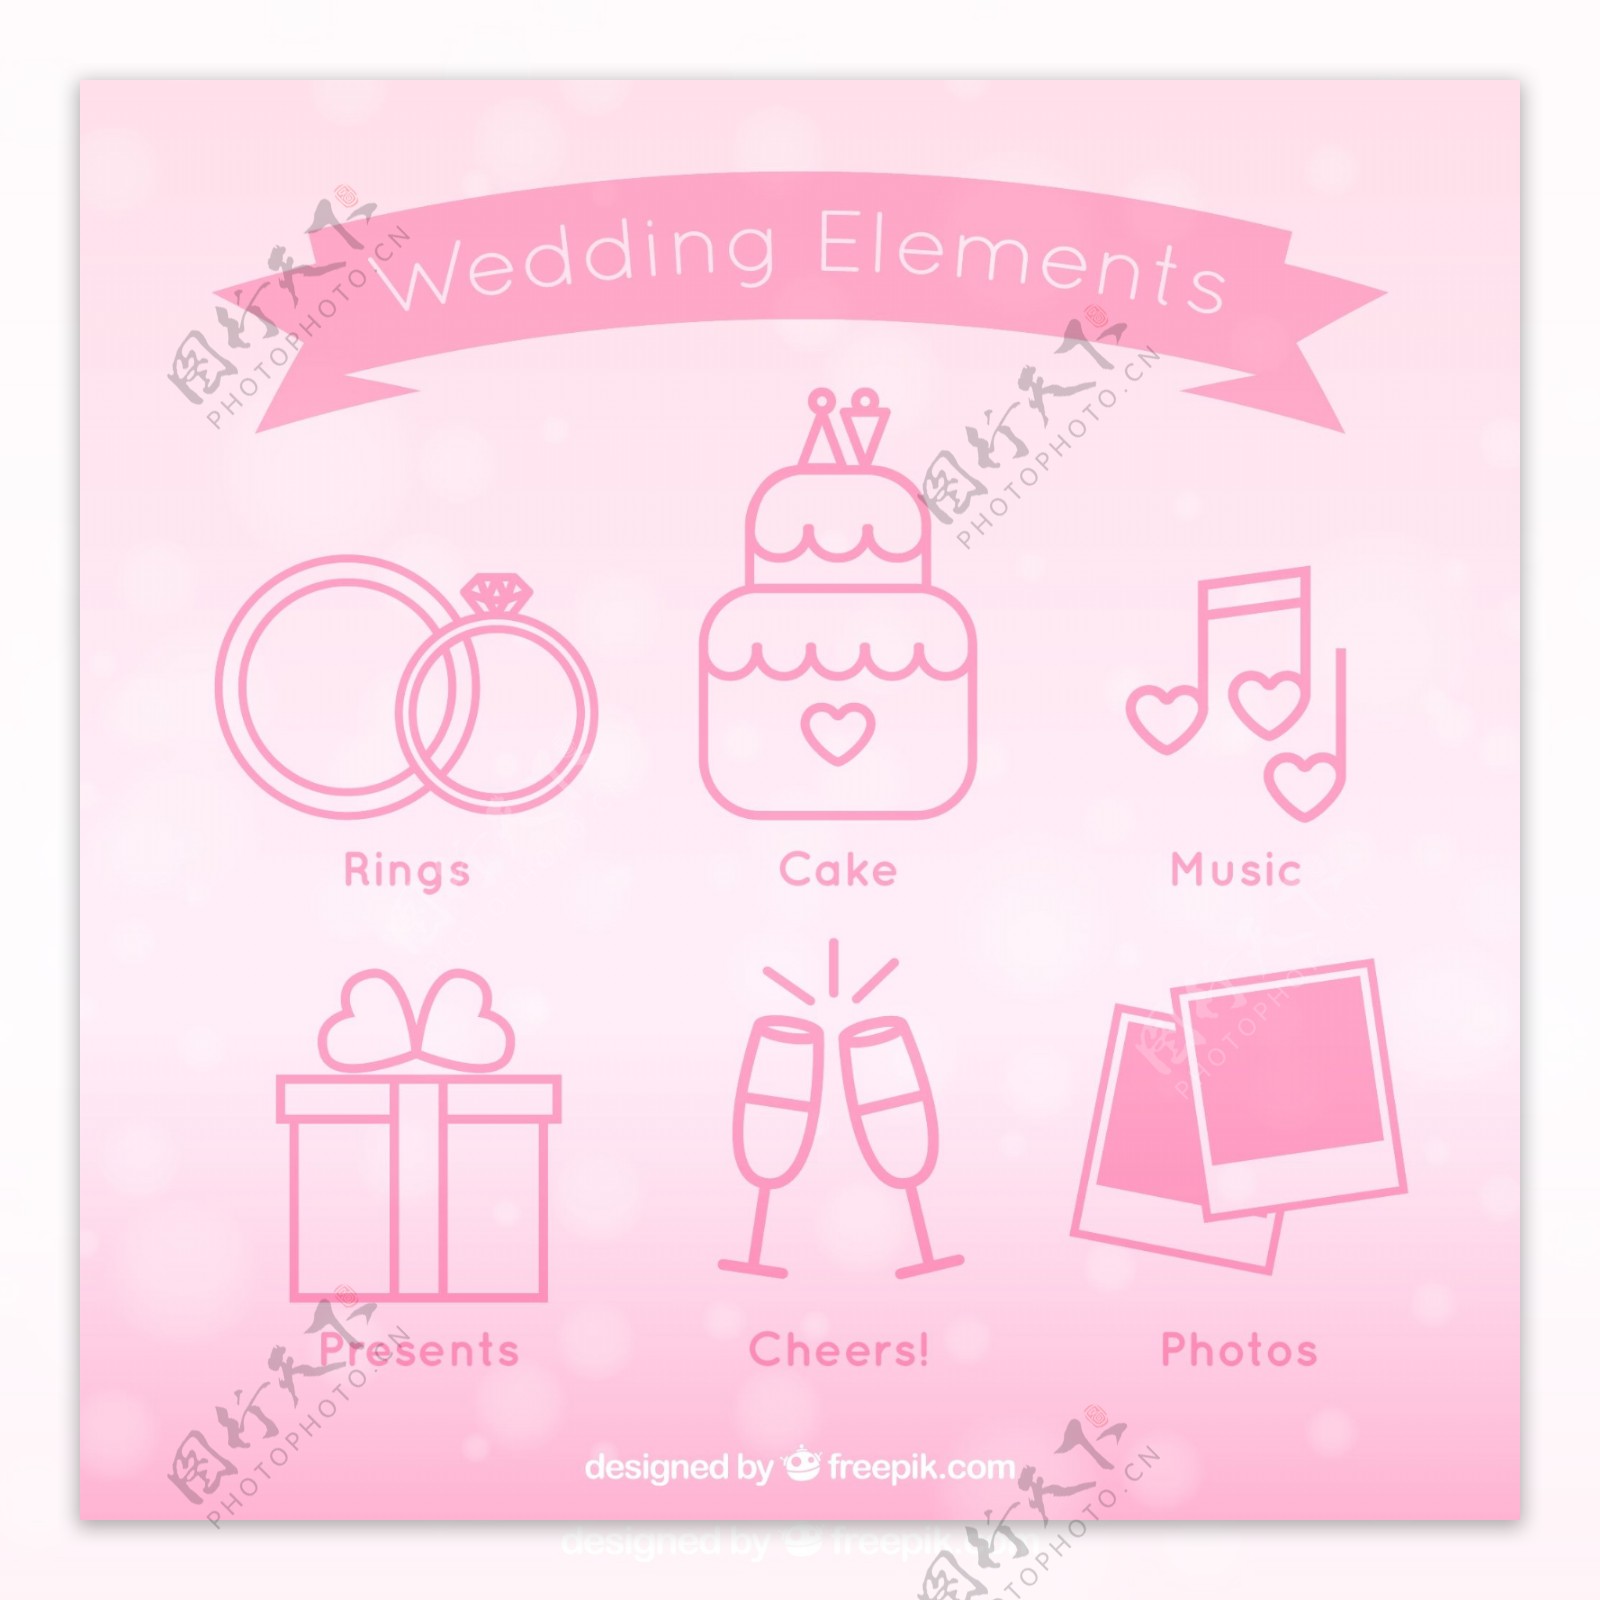 6粉红婚礼元素矢量图标